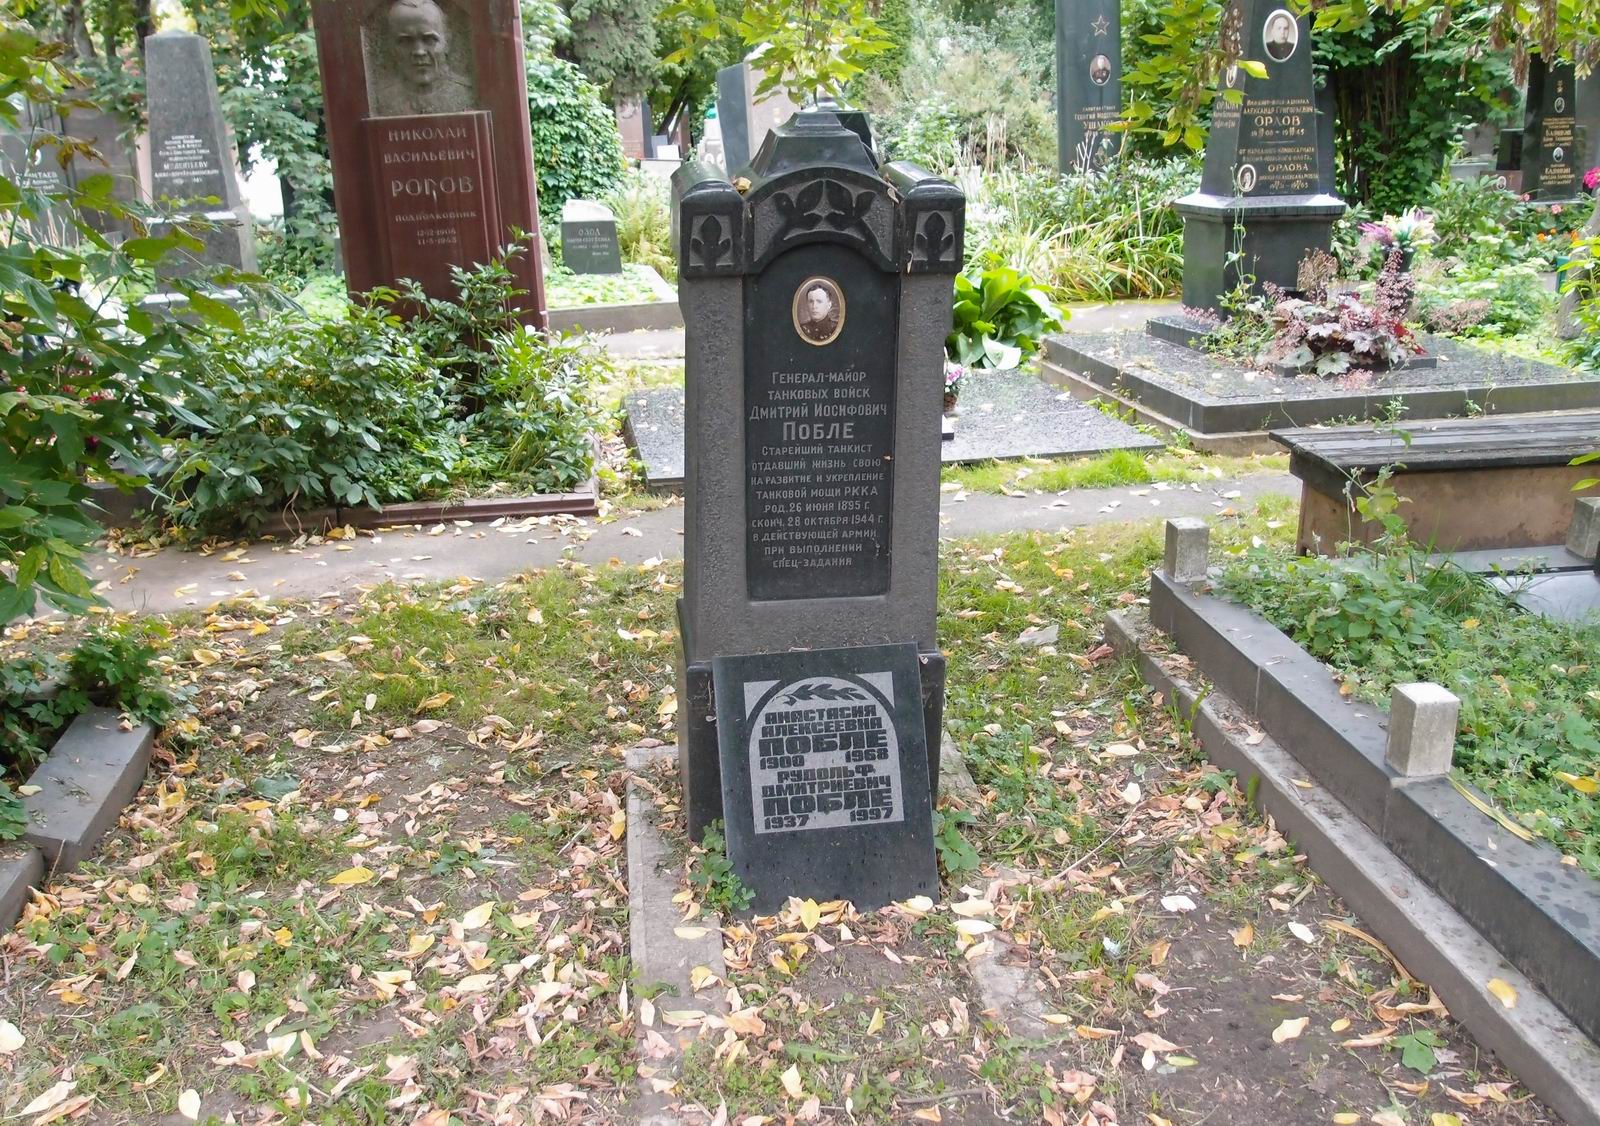 Памятник на могиле Побле Д.И. (1895-1944), на Новодевичьем кладбище (4-7-17).